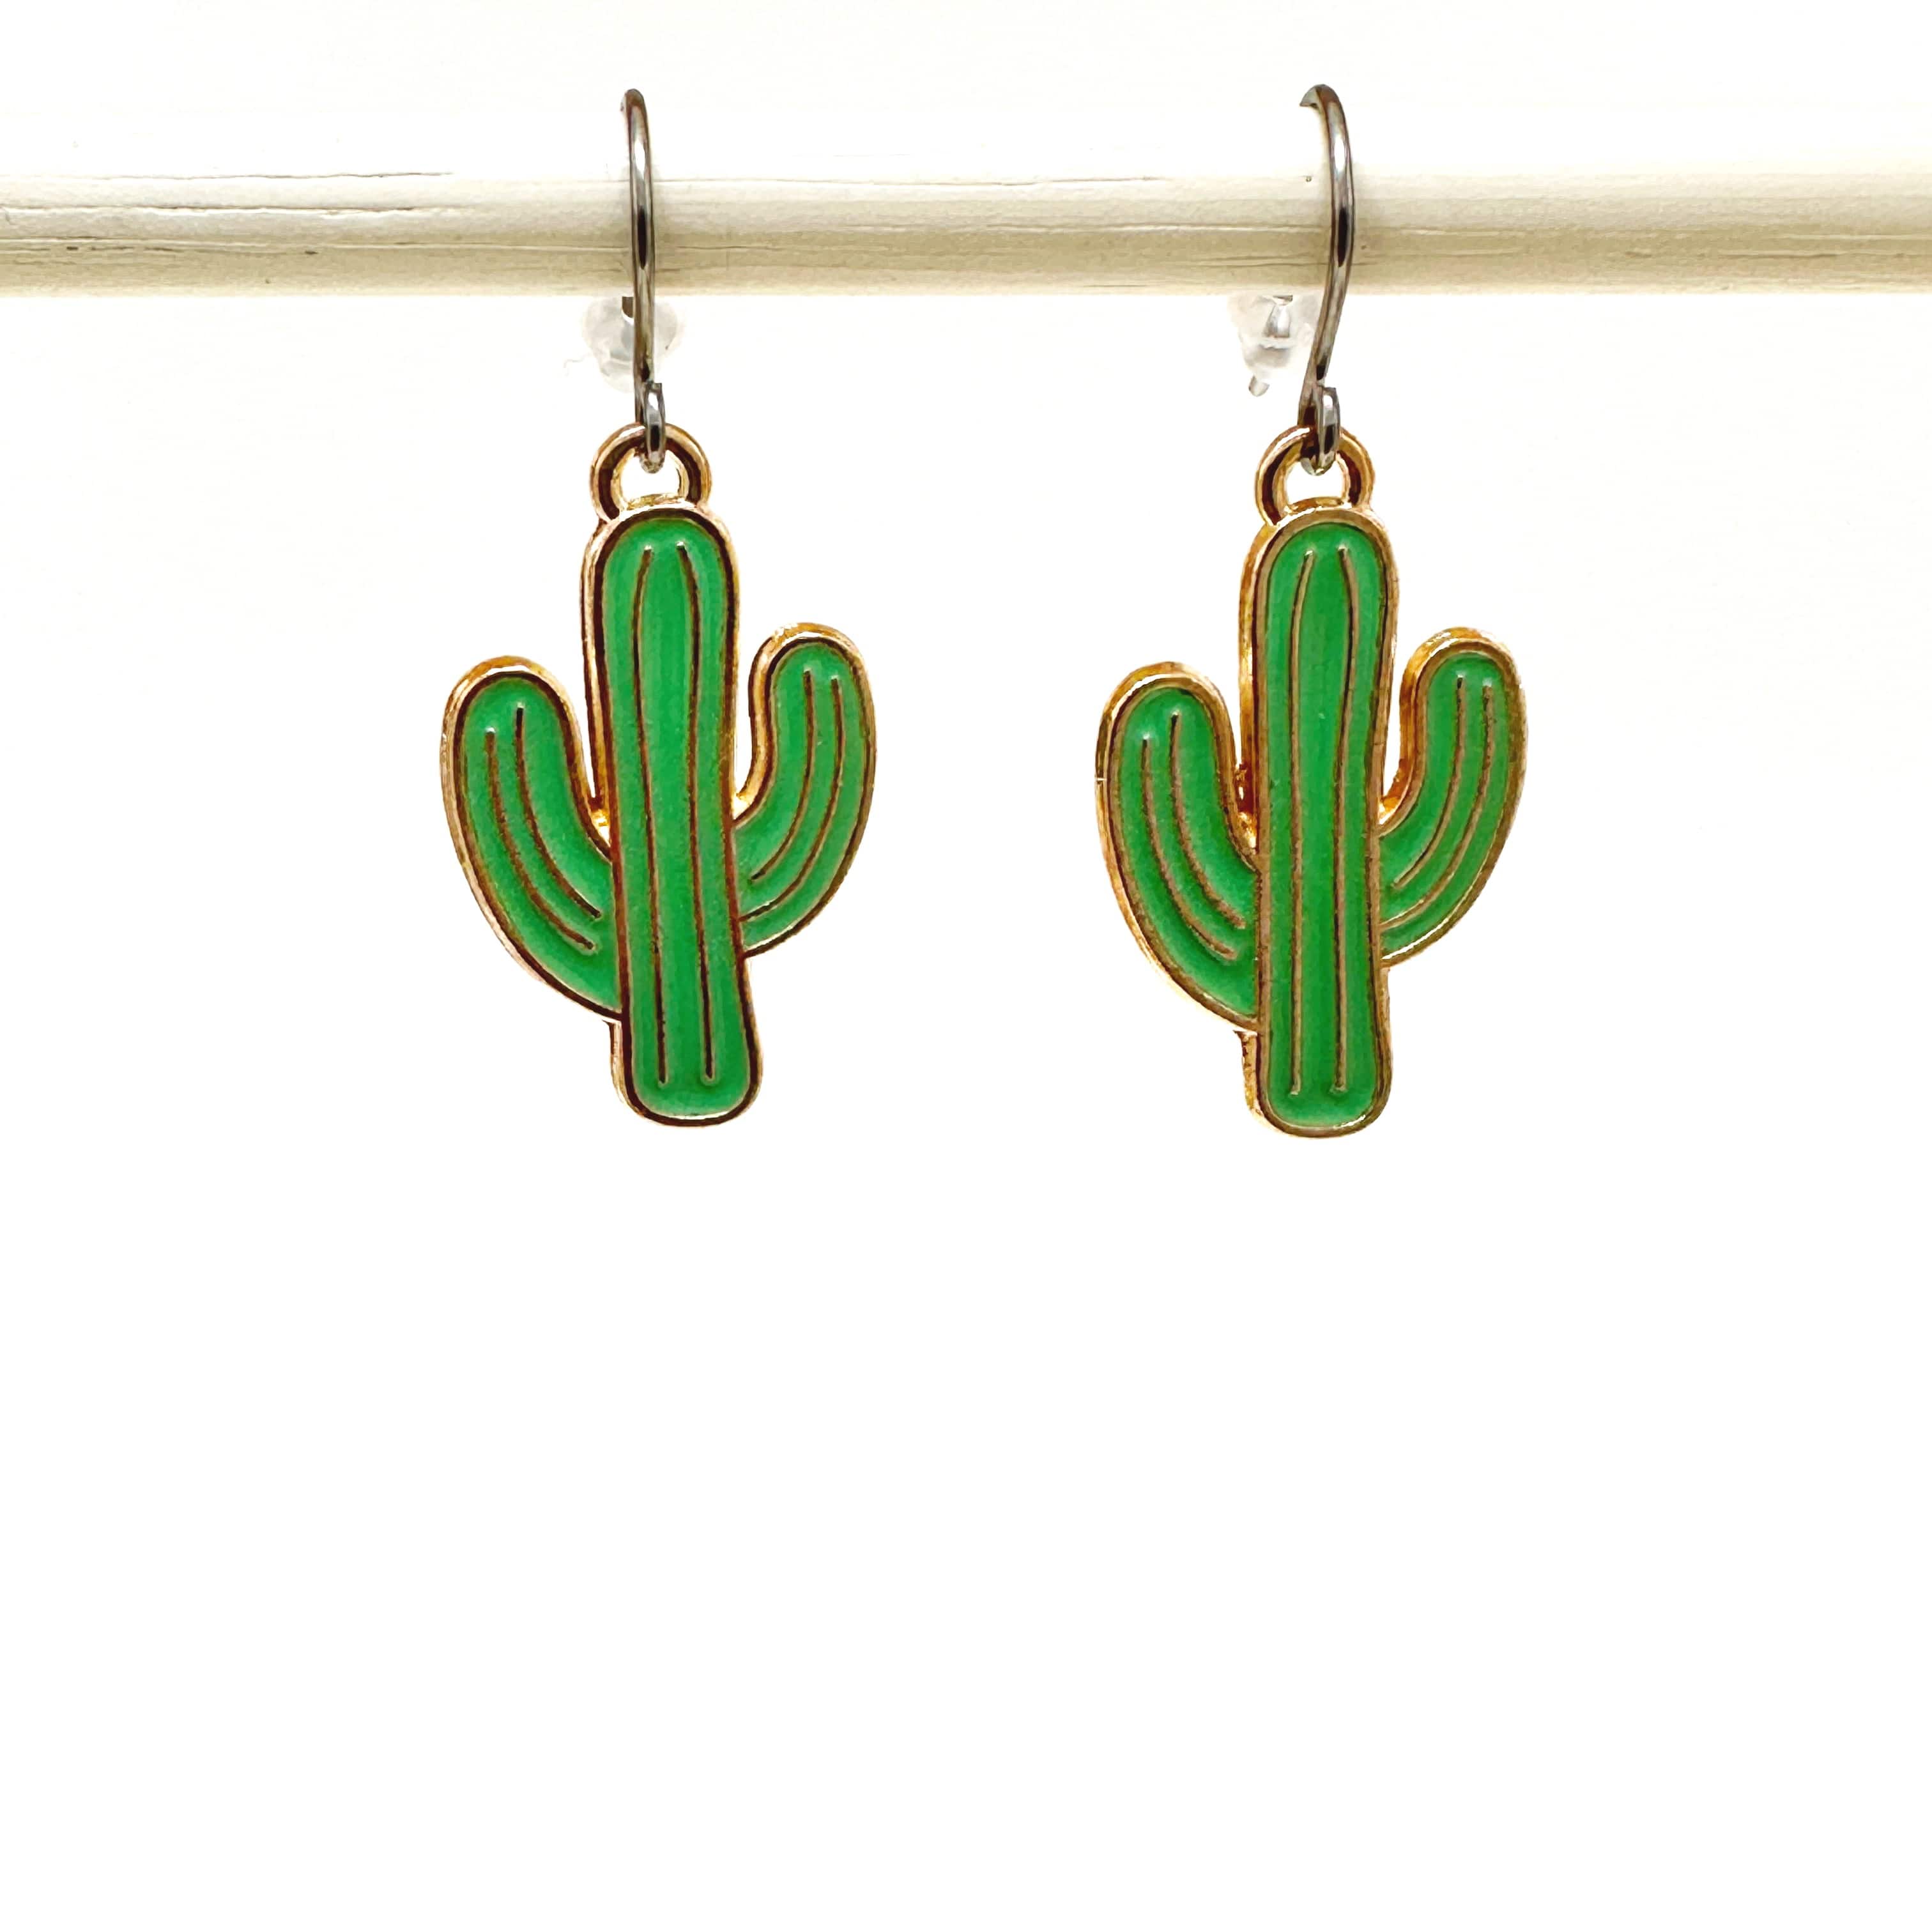 Cactus earrings